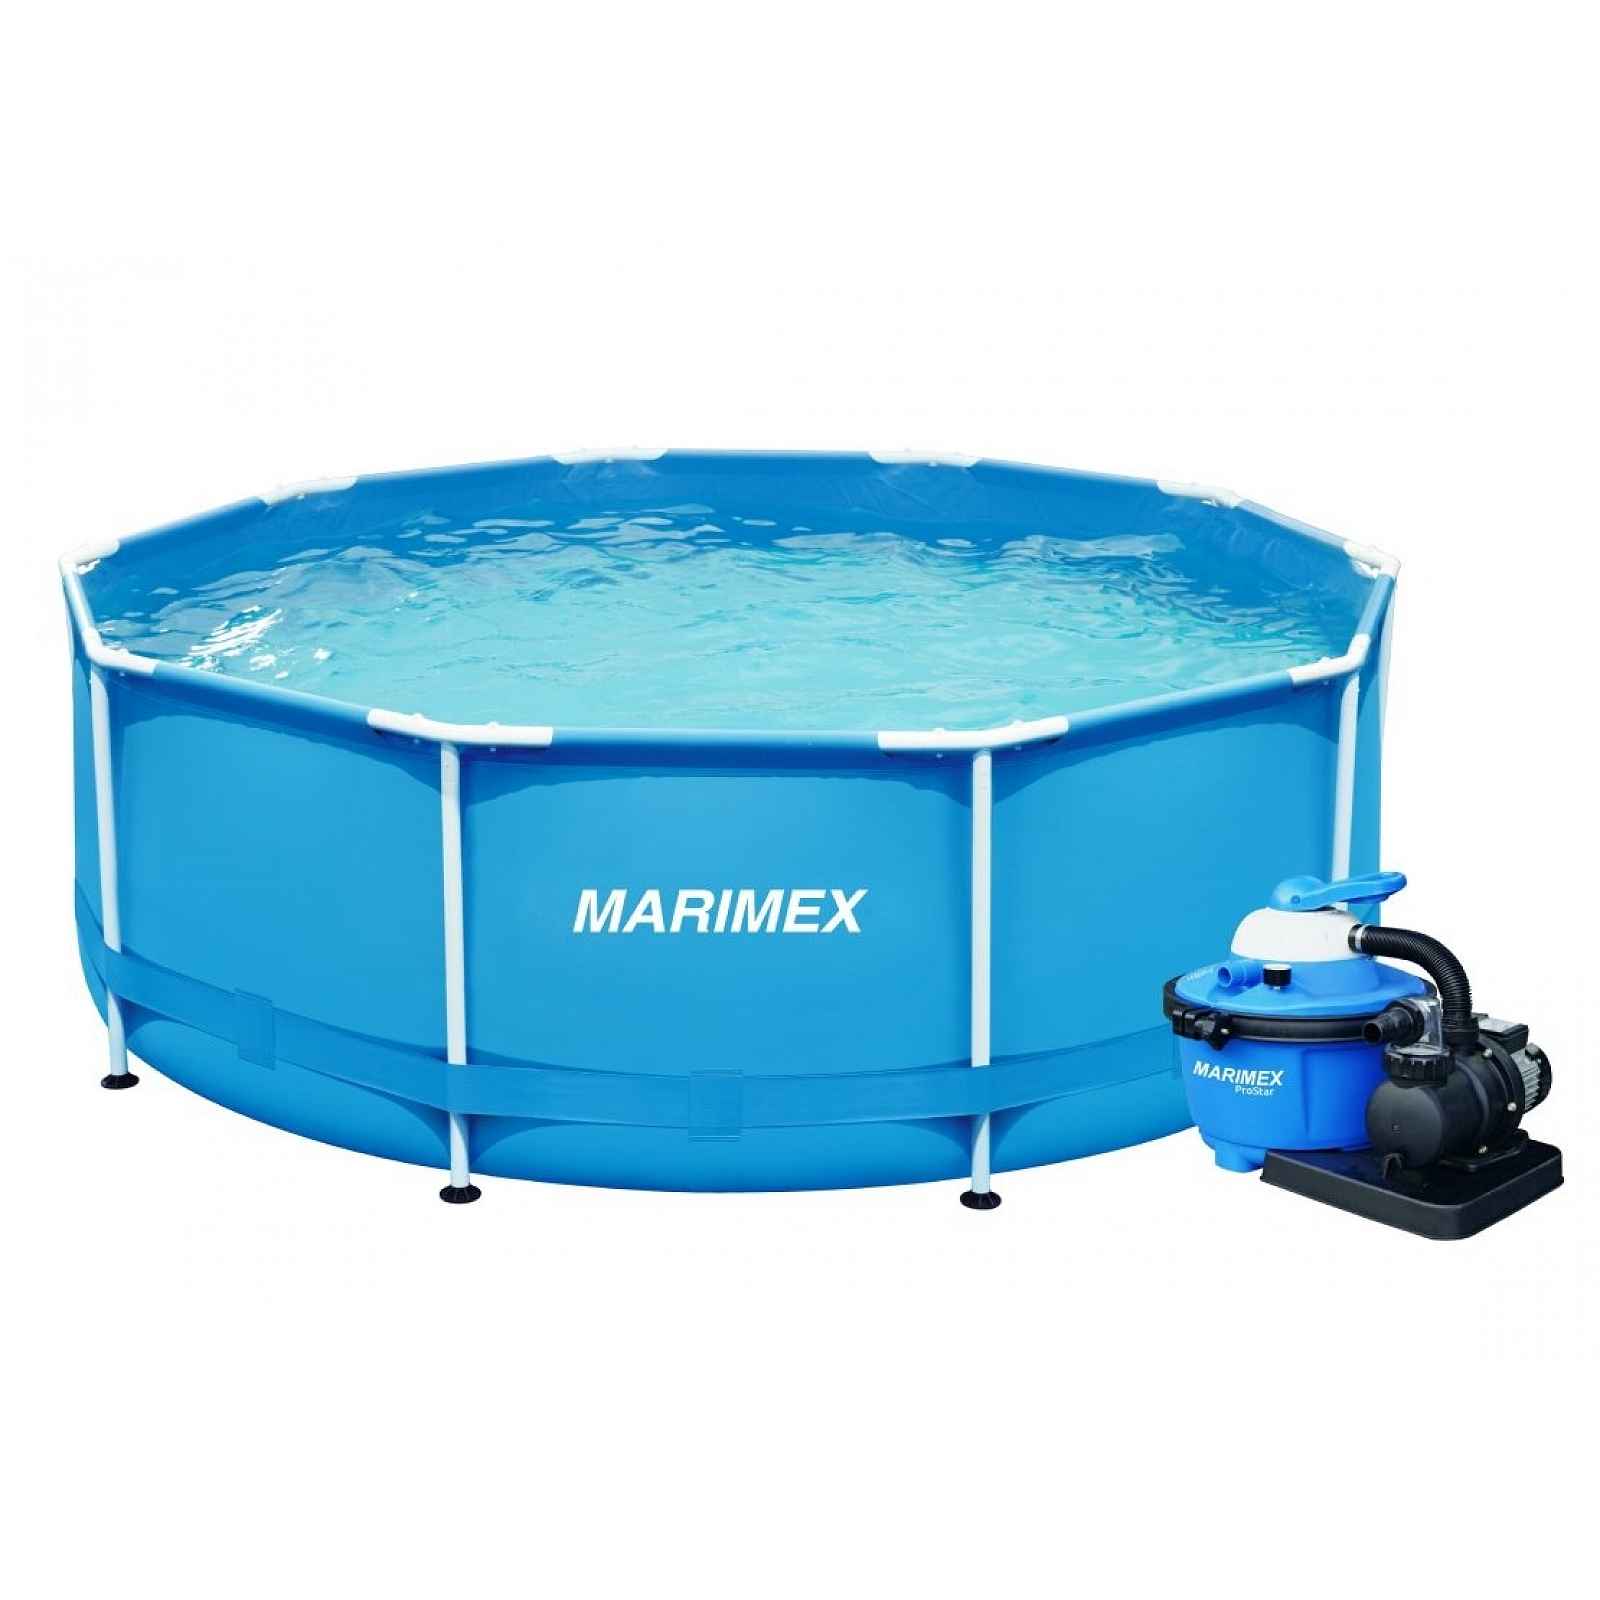 Marimex Bazén Florida 3,66x1,22 m s pískovou filtrací